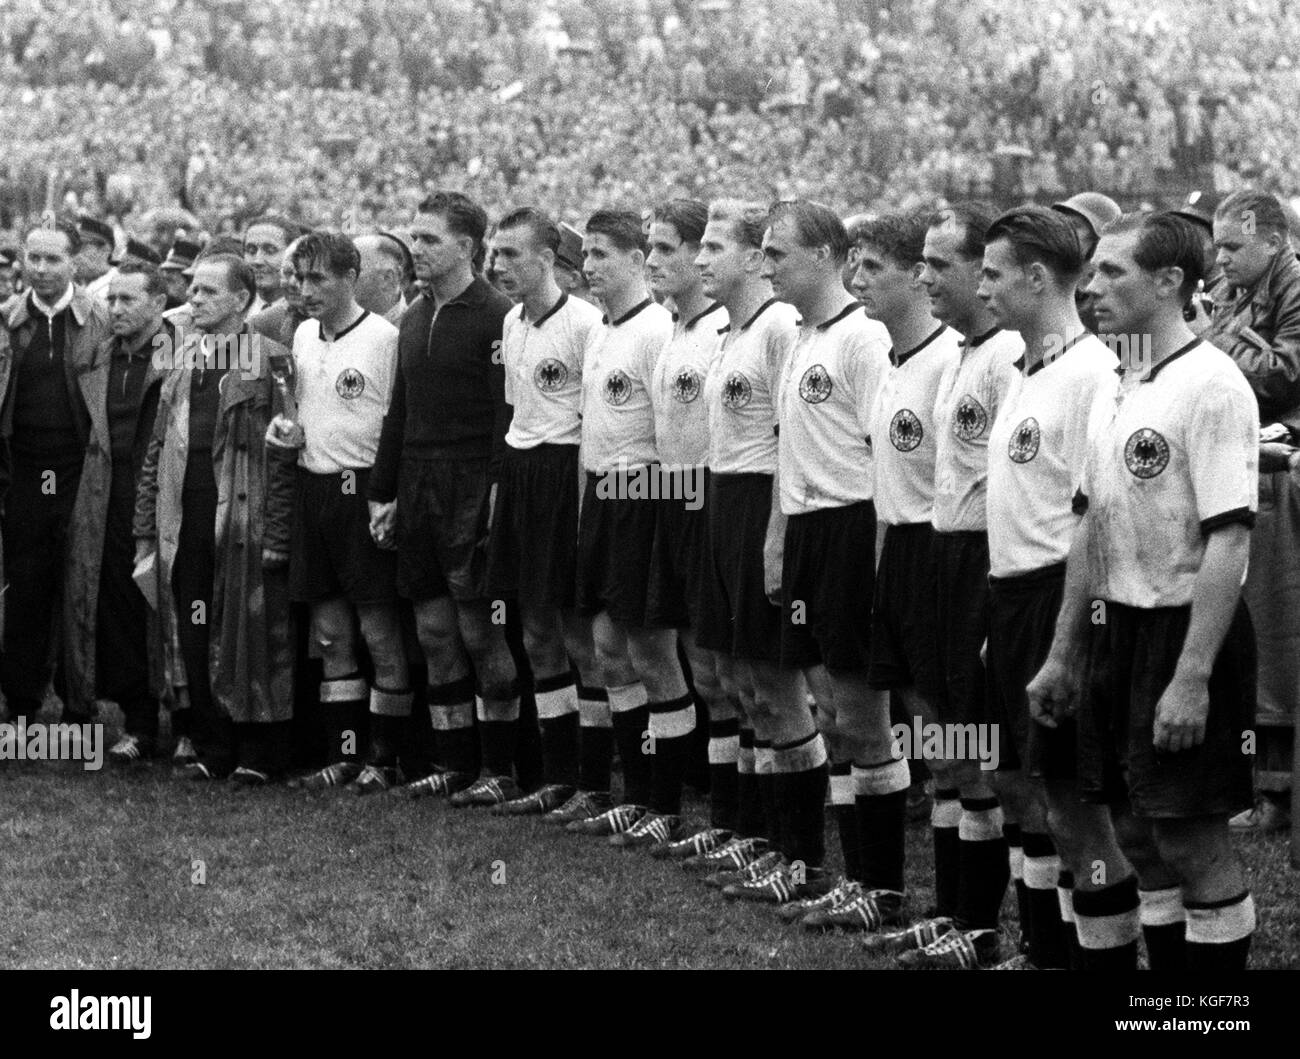 Datei) · ein Archiv Bild, 4. Juli 1954 datiert, zeigt die deutsche  Fußball-Nationalmannschaft vor 53.000 espectators geehrt nach ihrem Sieg  von 3:2 gegen Ungarn im Wankdorf-stadion in Bern, Schweiz. für die  siegerehrung